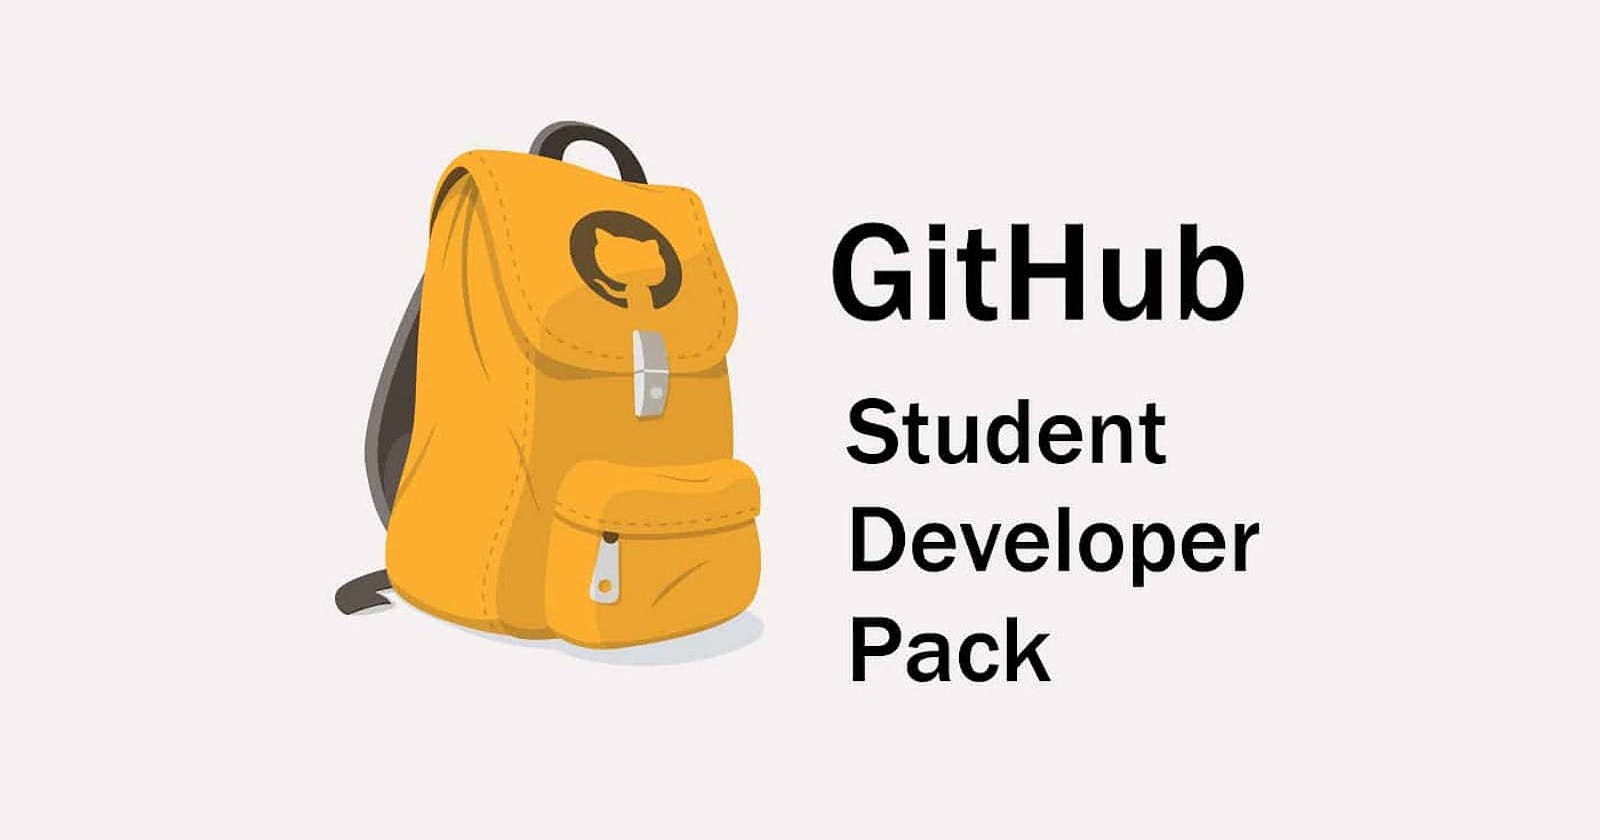 Get your GitHub Student Developer Pack